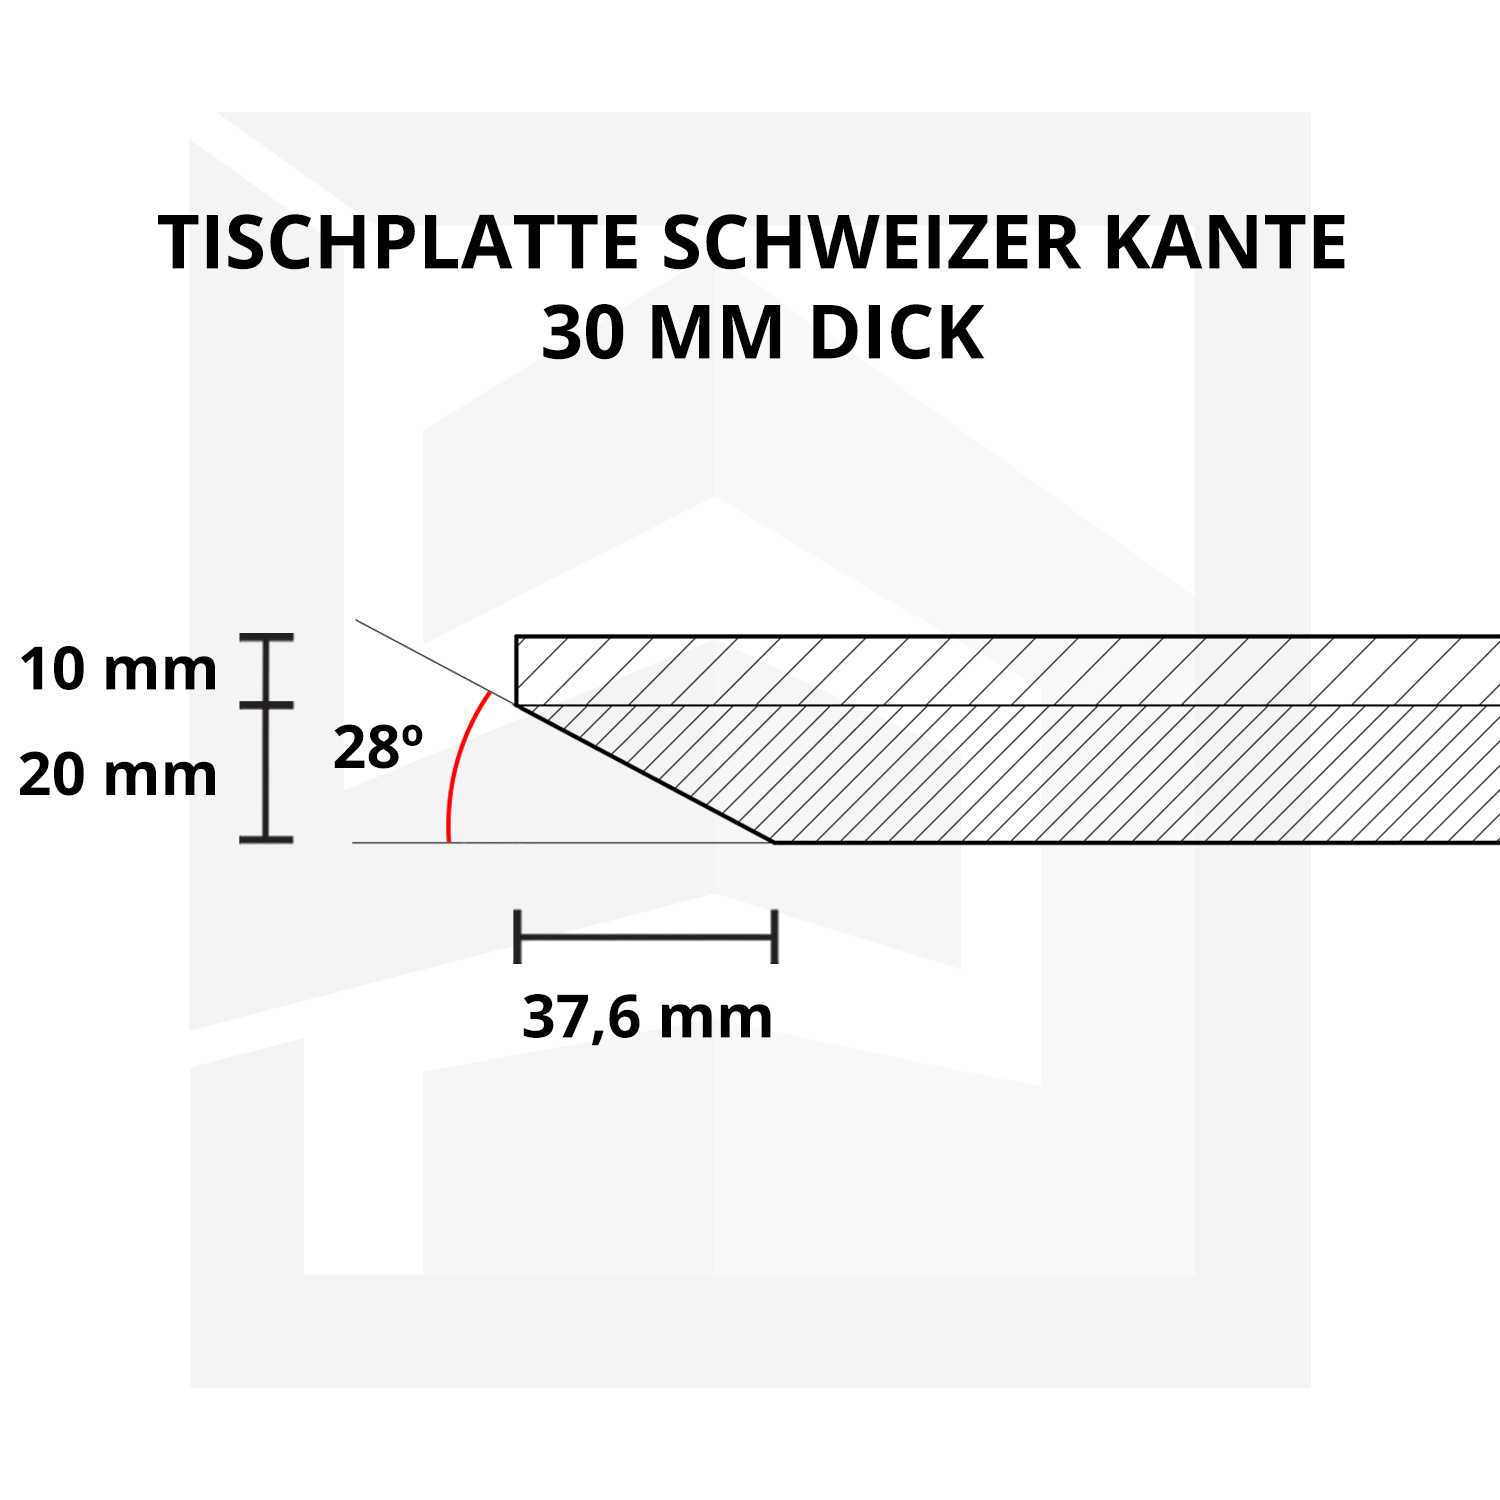  Wandregal Eiche schwebend - mit Schweizer Kante - nach Maß - 2,7 cm dick - Eichenholz A-Qualität - vorgebohrtes eichen Wandboard massiv - inklusive (Blind) -Halterungen - verleimt & getrocknet (HF 8-12%) - 20-30x50-248 cm